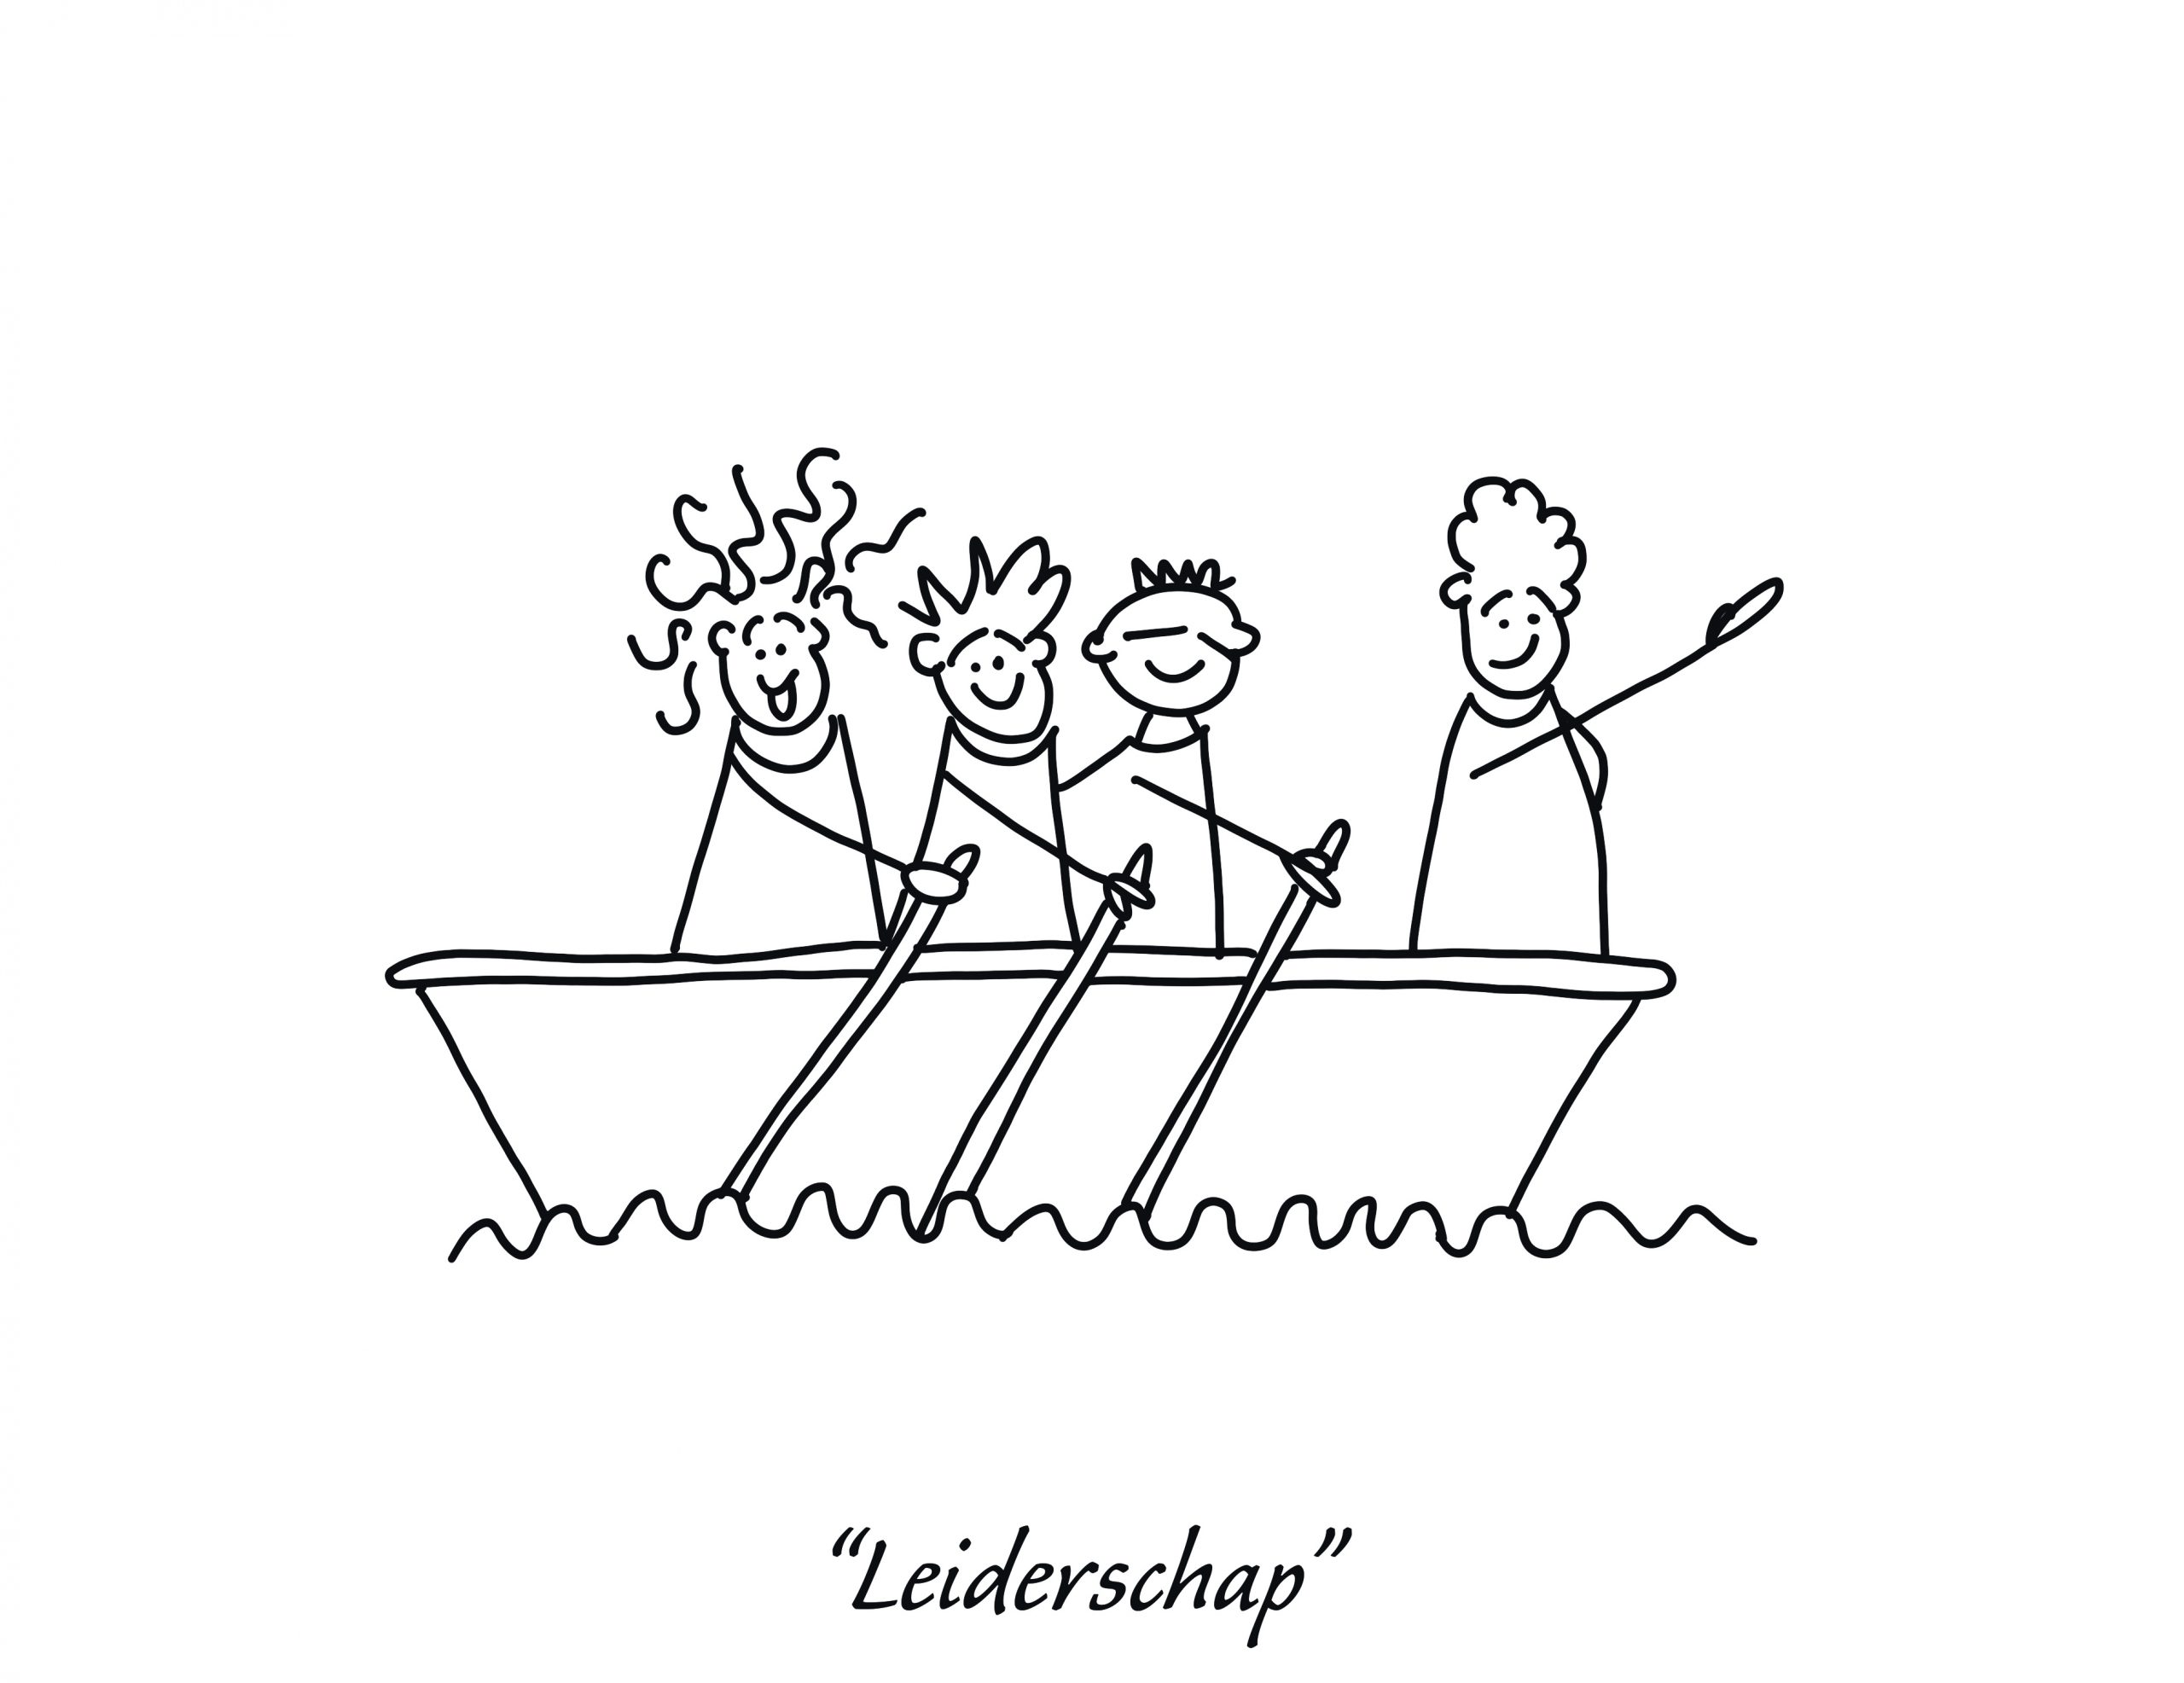 FLEX Gespreks Kaartjes - Afbeelding van een harkpoppetje die leiderschap uitbeeldt in een bootje